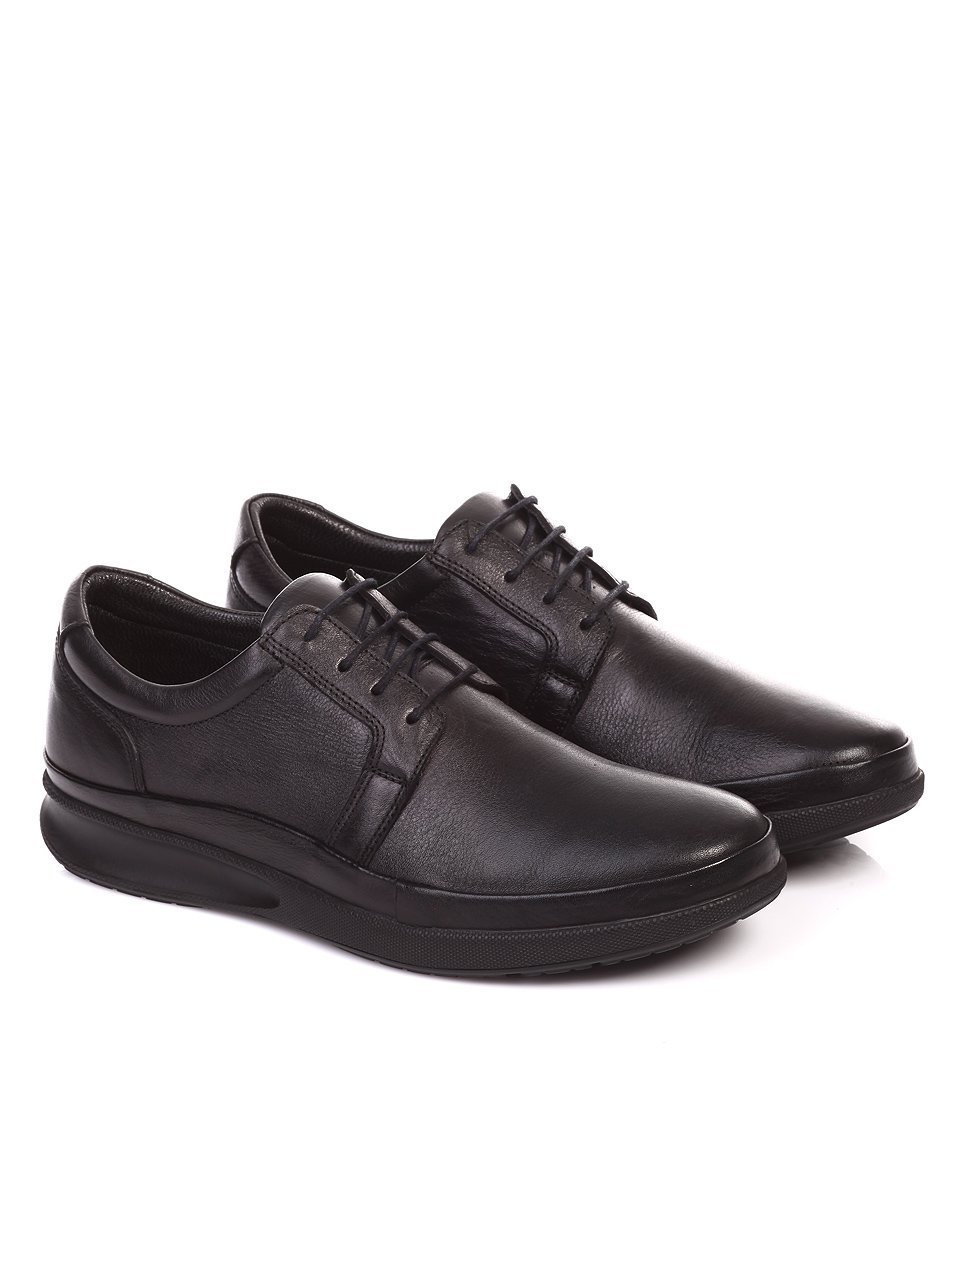 Спортно-елегантни мъжки обувки от естествена кожа 7AT-16904 black